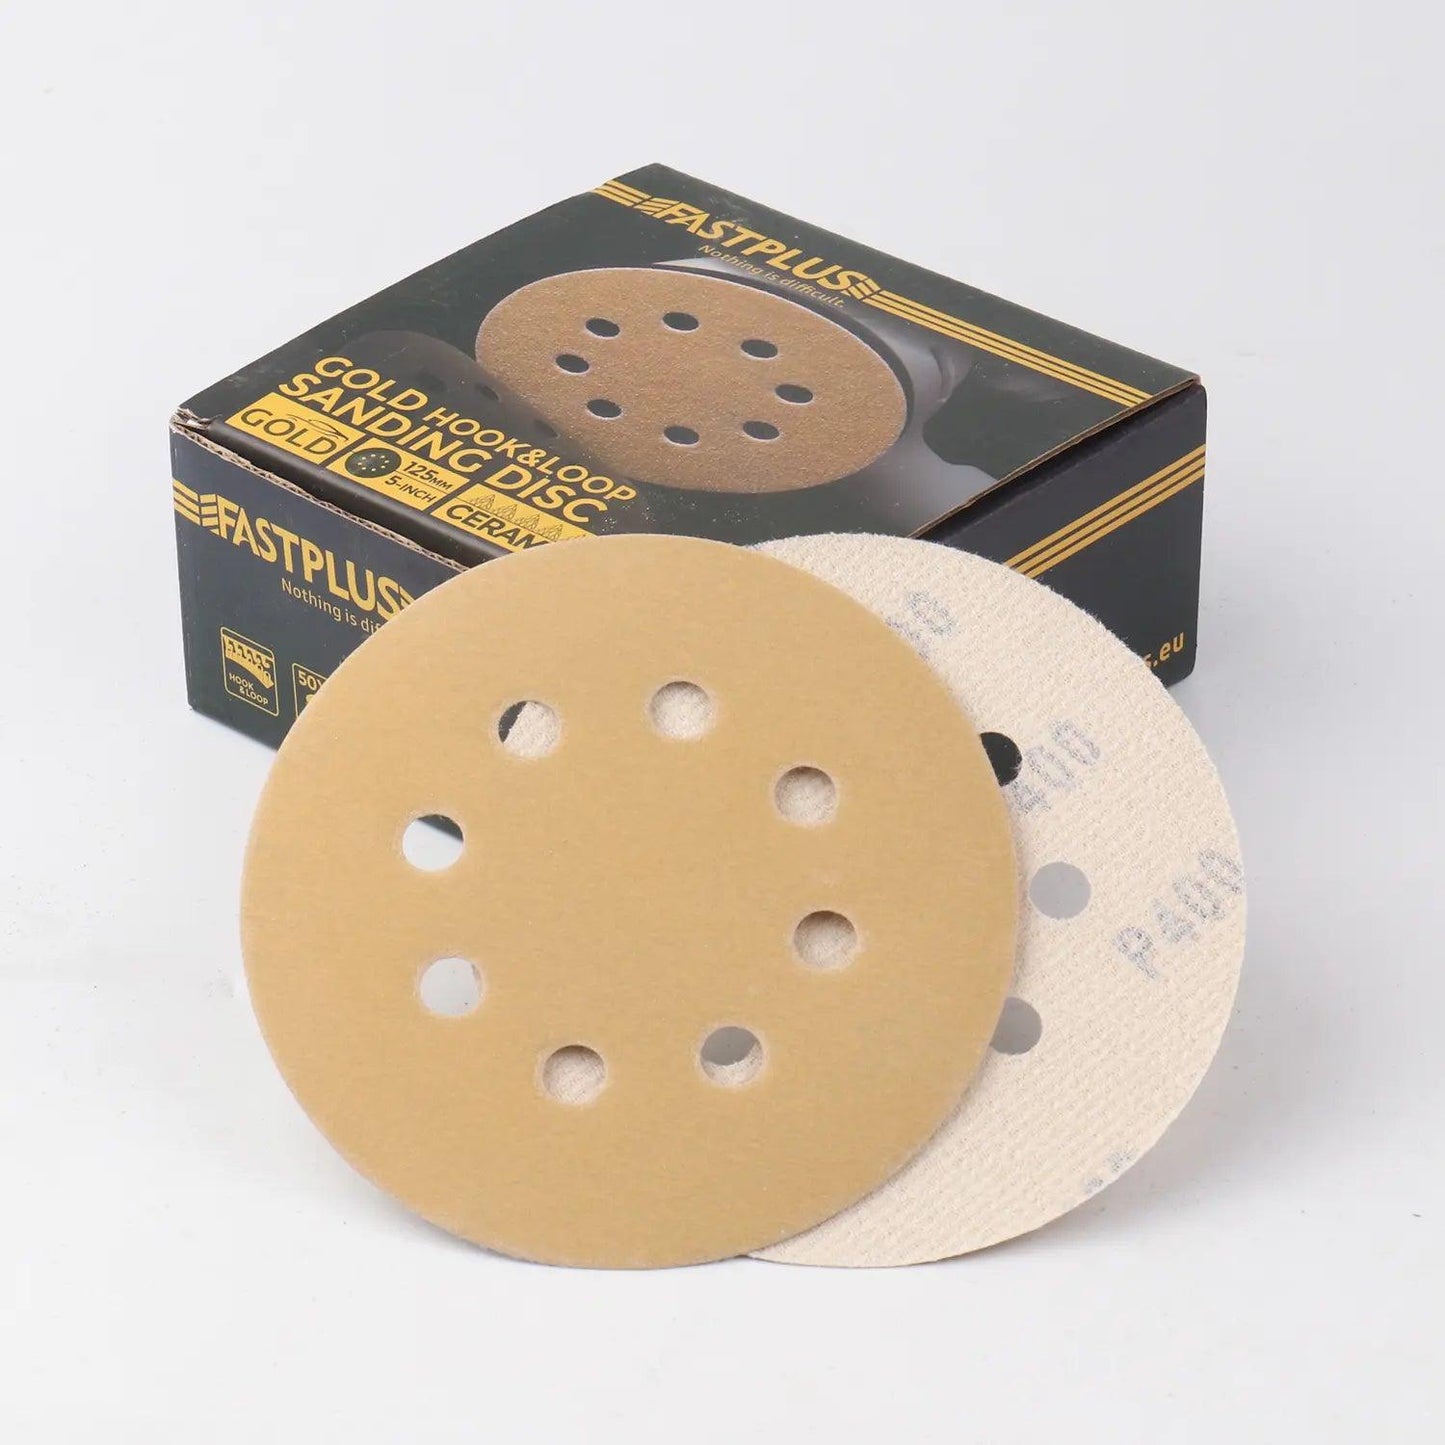 125mm Klett-schleifscheiben gold mirka f15 sanding discs fastplus P400